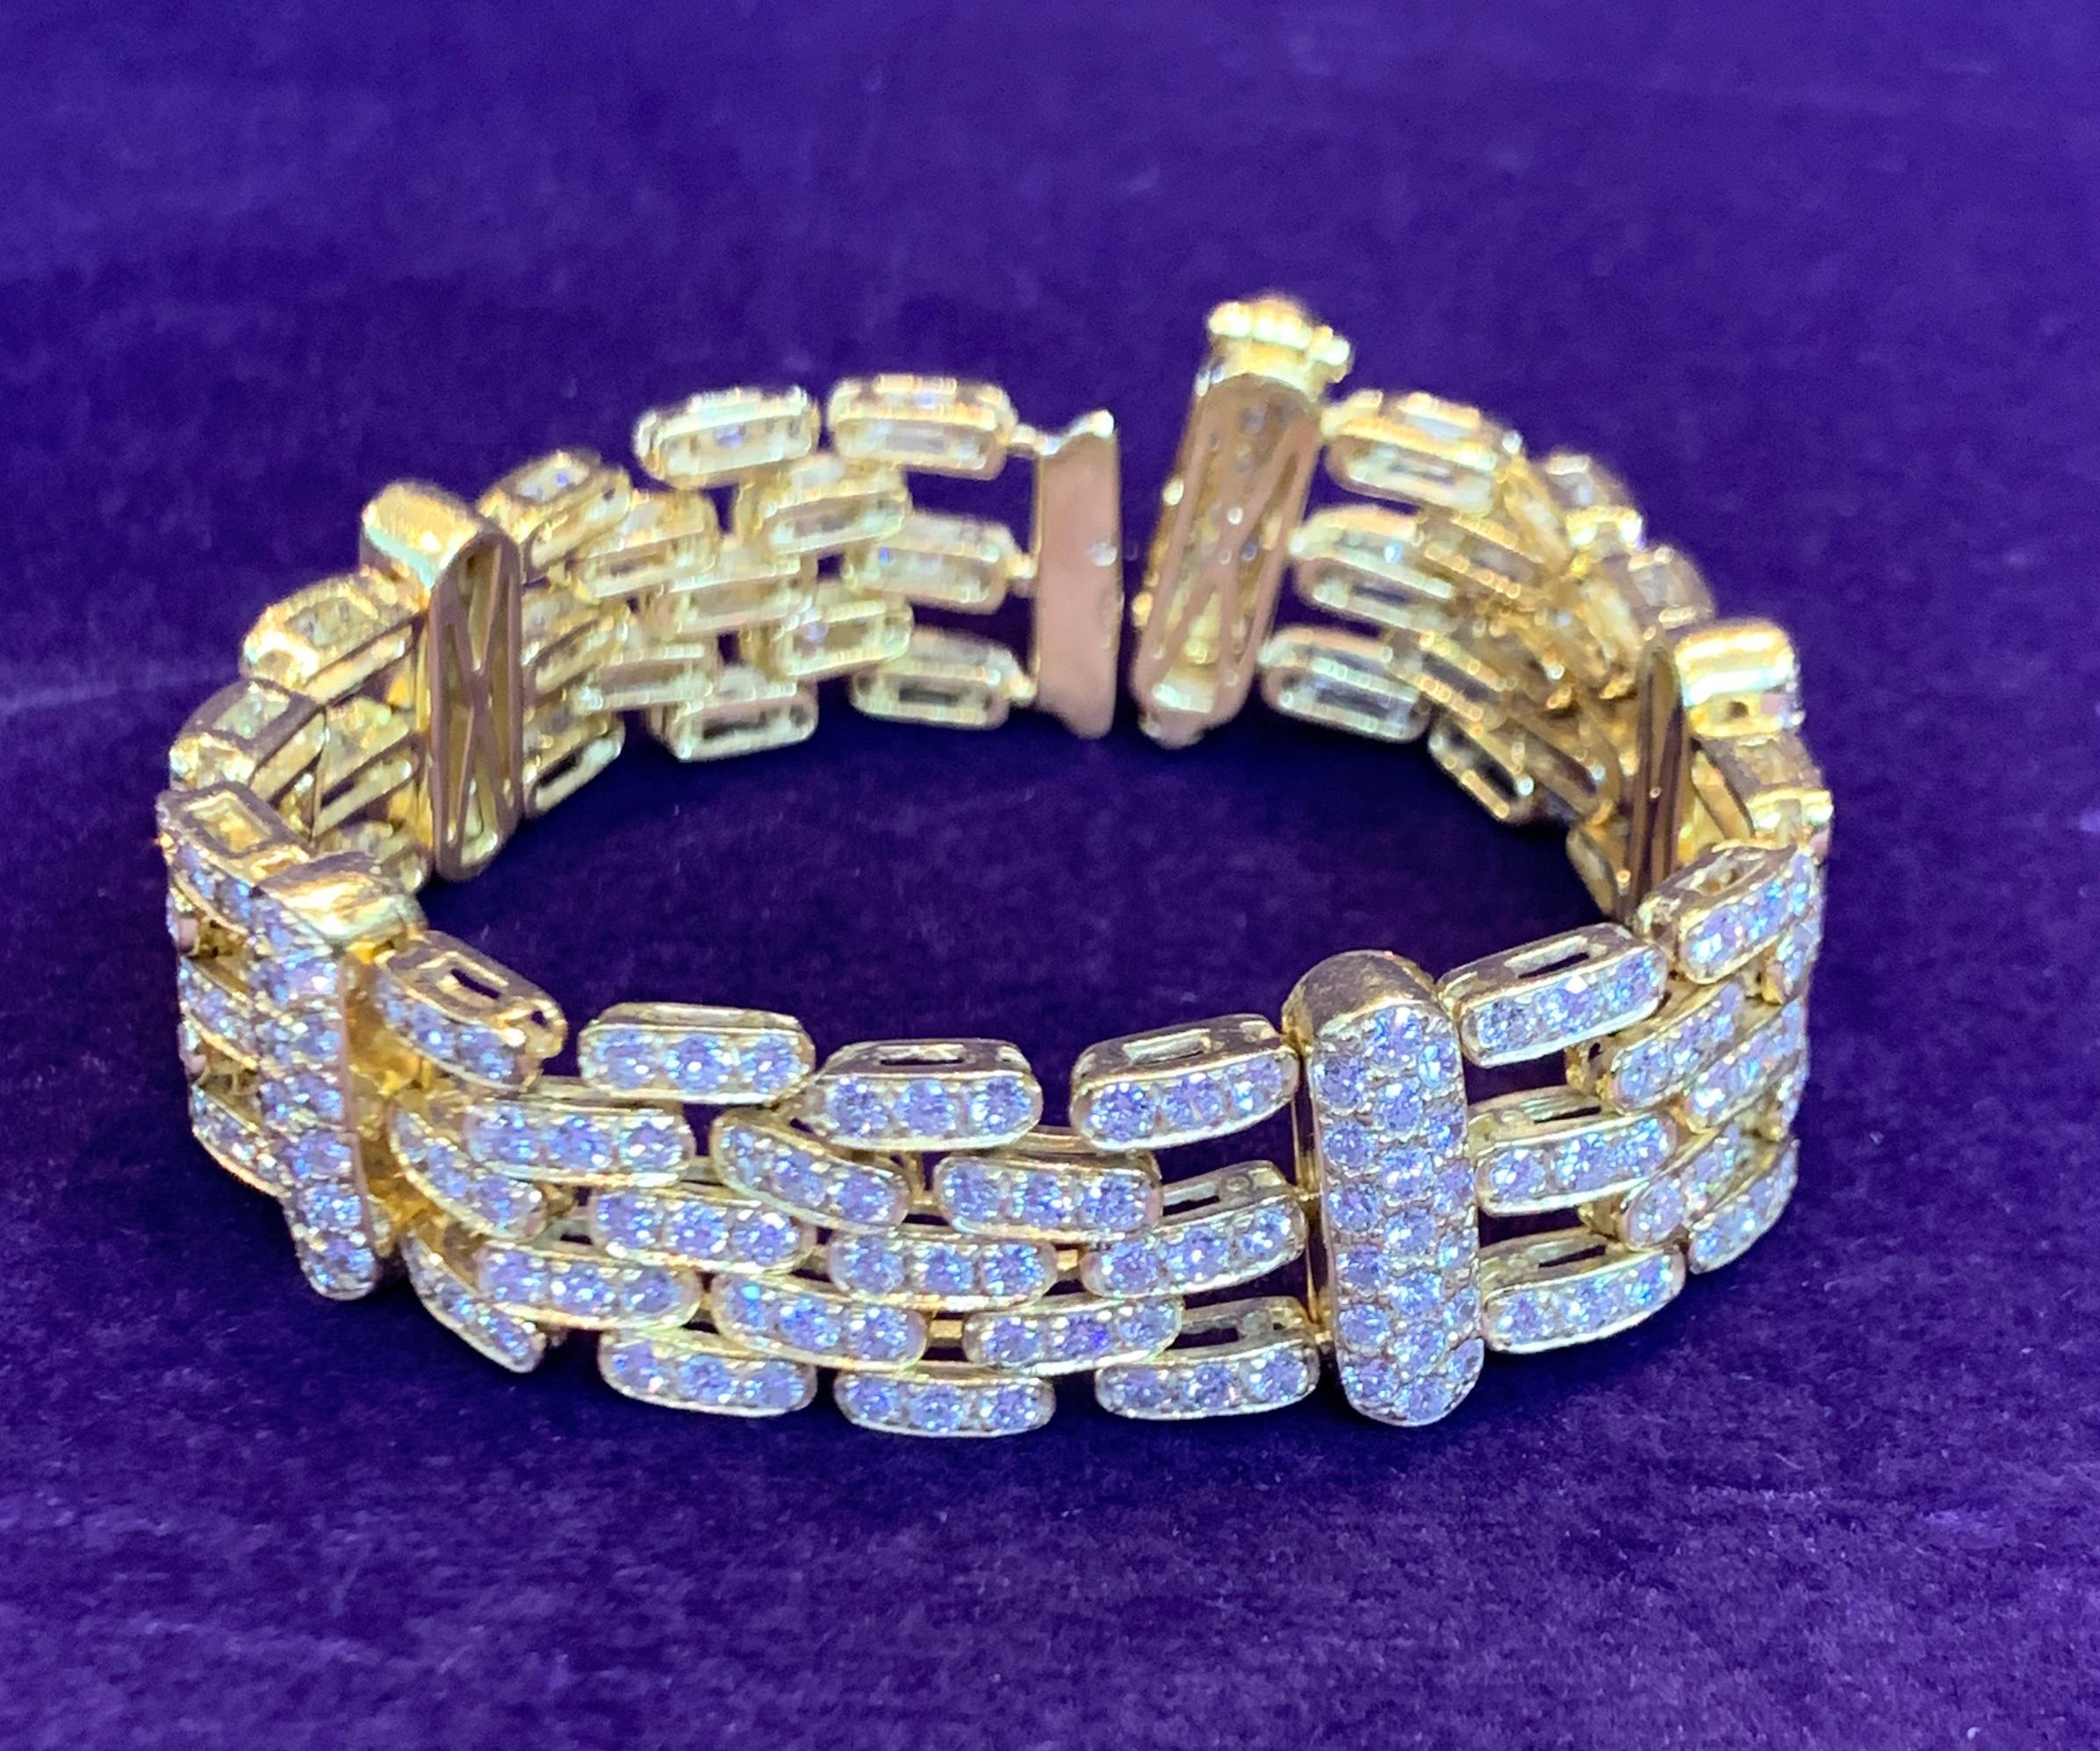 bracelet pour homme en or jaune 18K avec 290 diamants taille brillant pesant approximativement 11,80 ct.
Longueur : 6.5